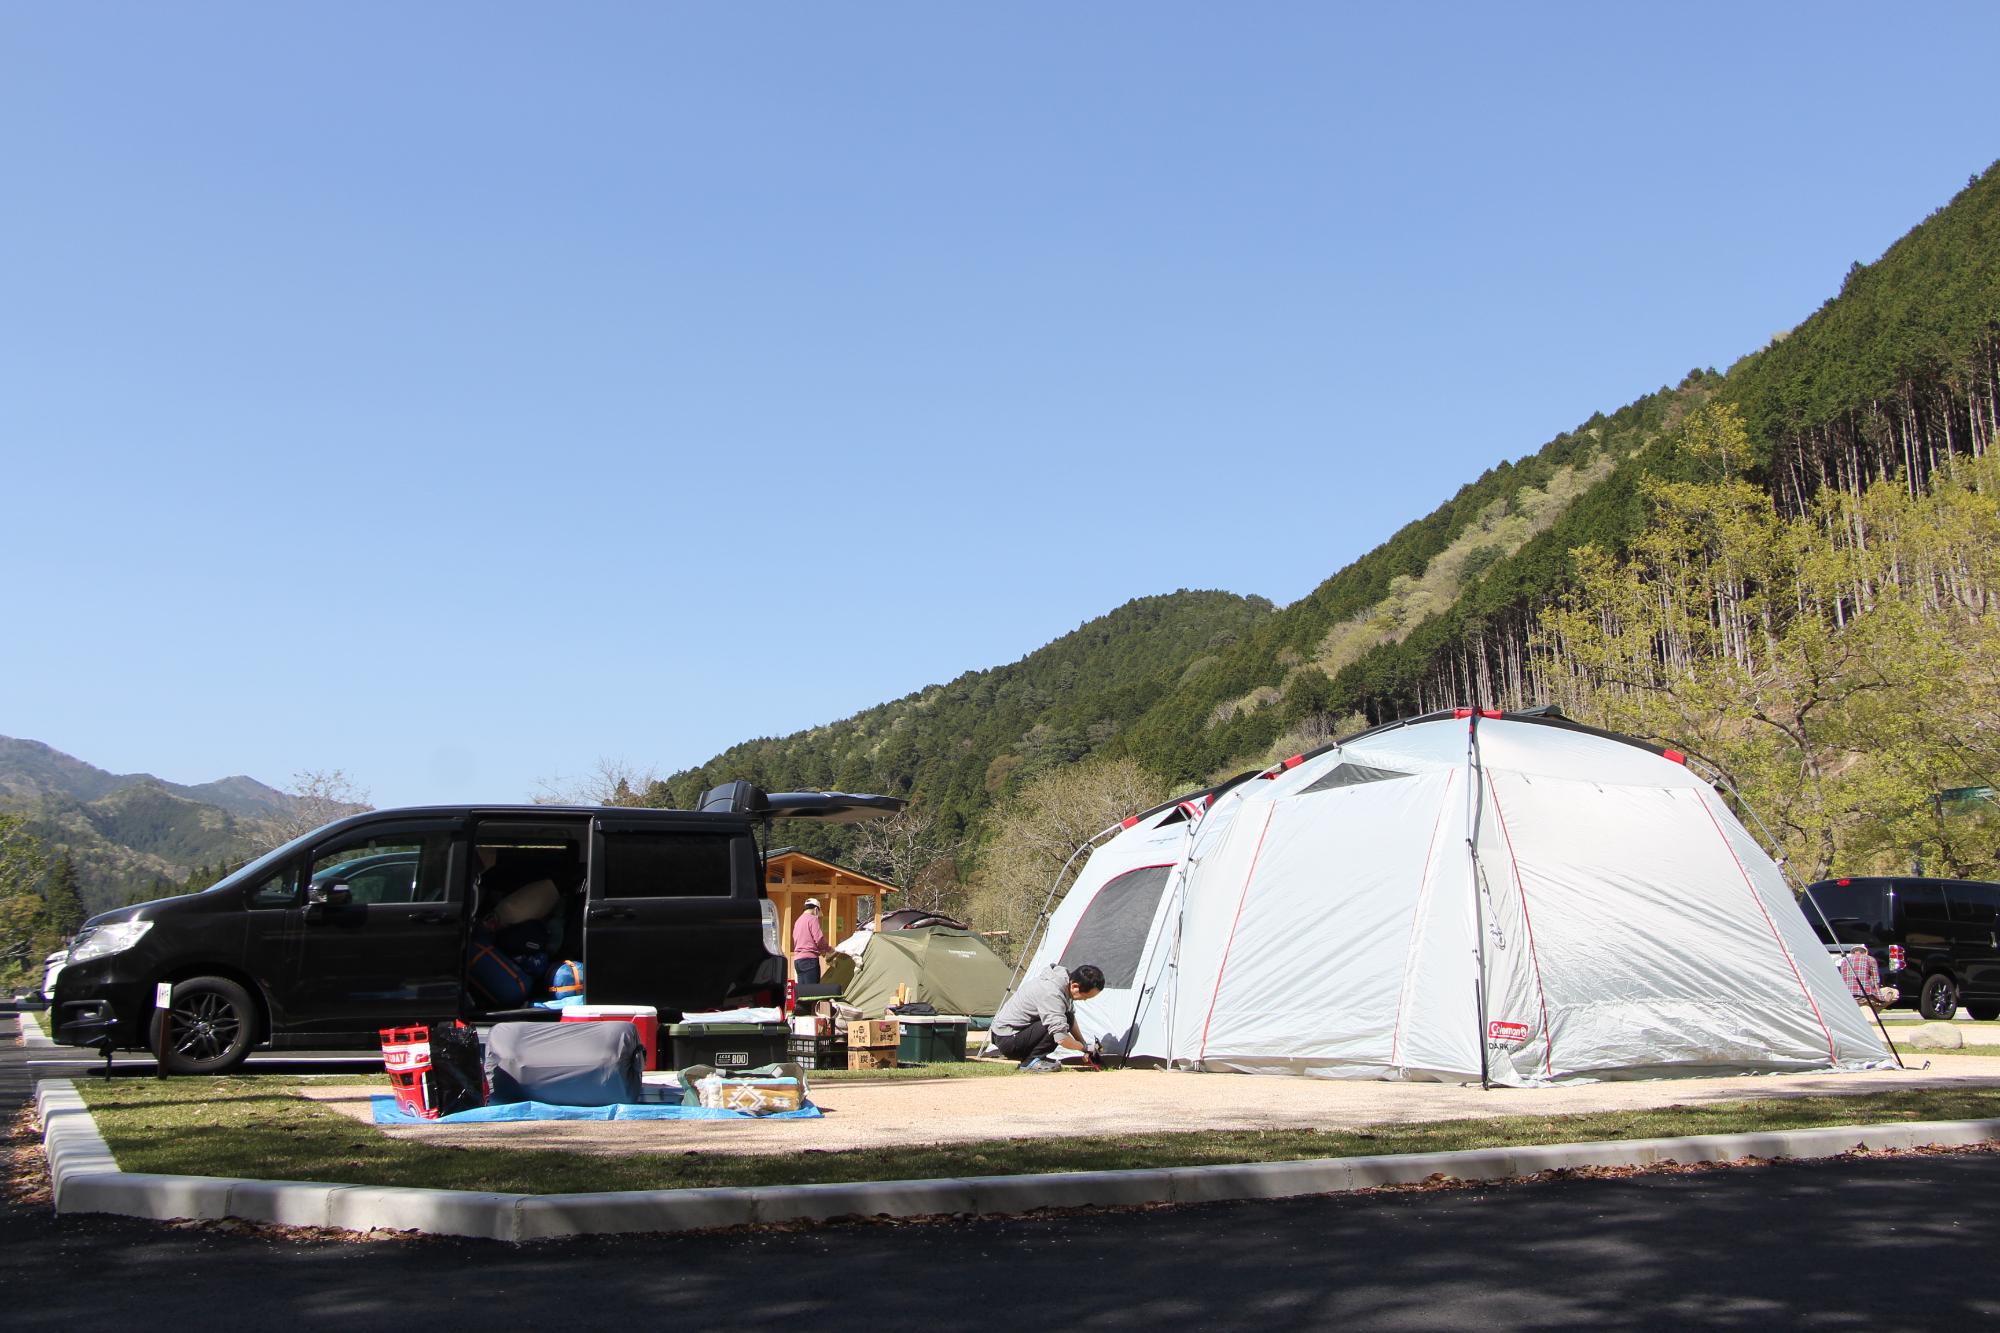 キャンプ場利用者がキャンプ用品を区画内に広げ、テントのペグを地面に打ち込んでいる写真